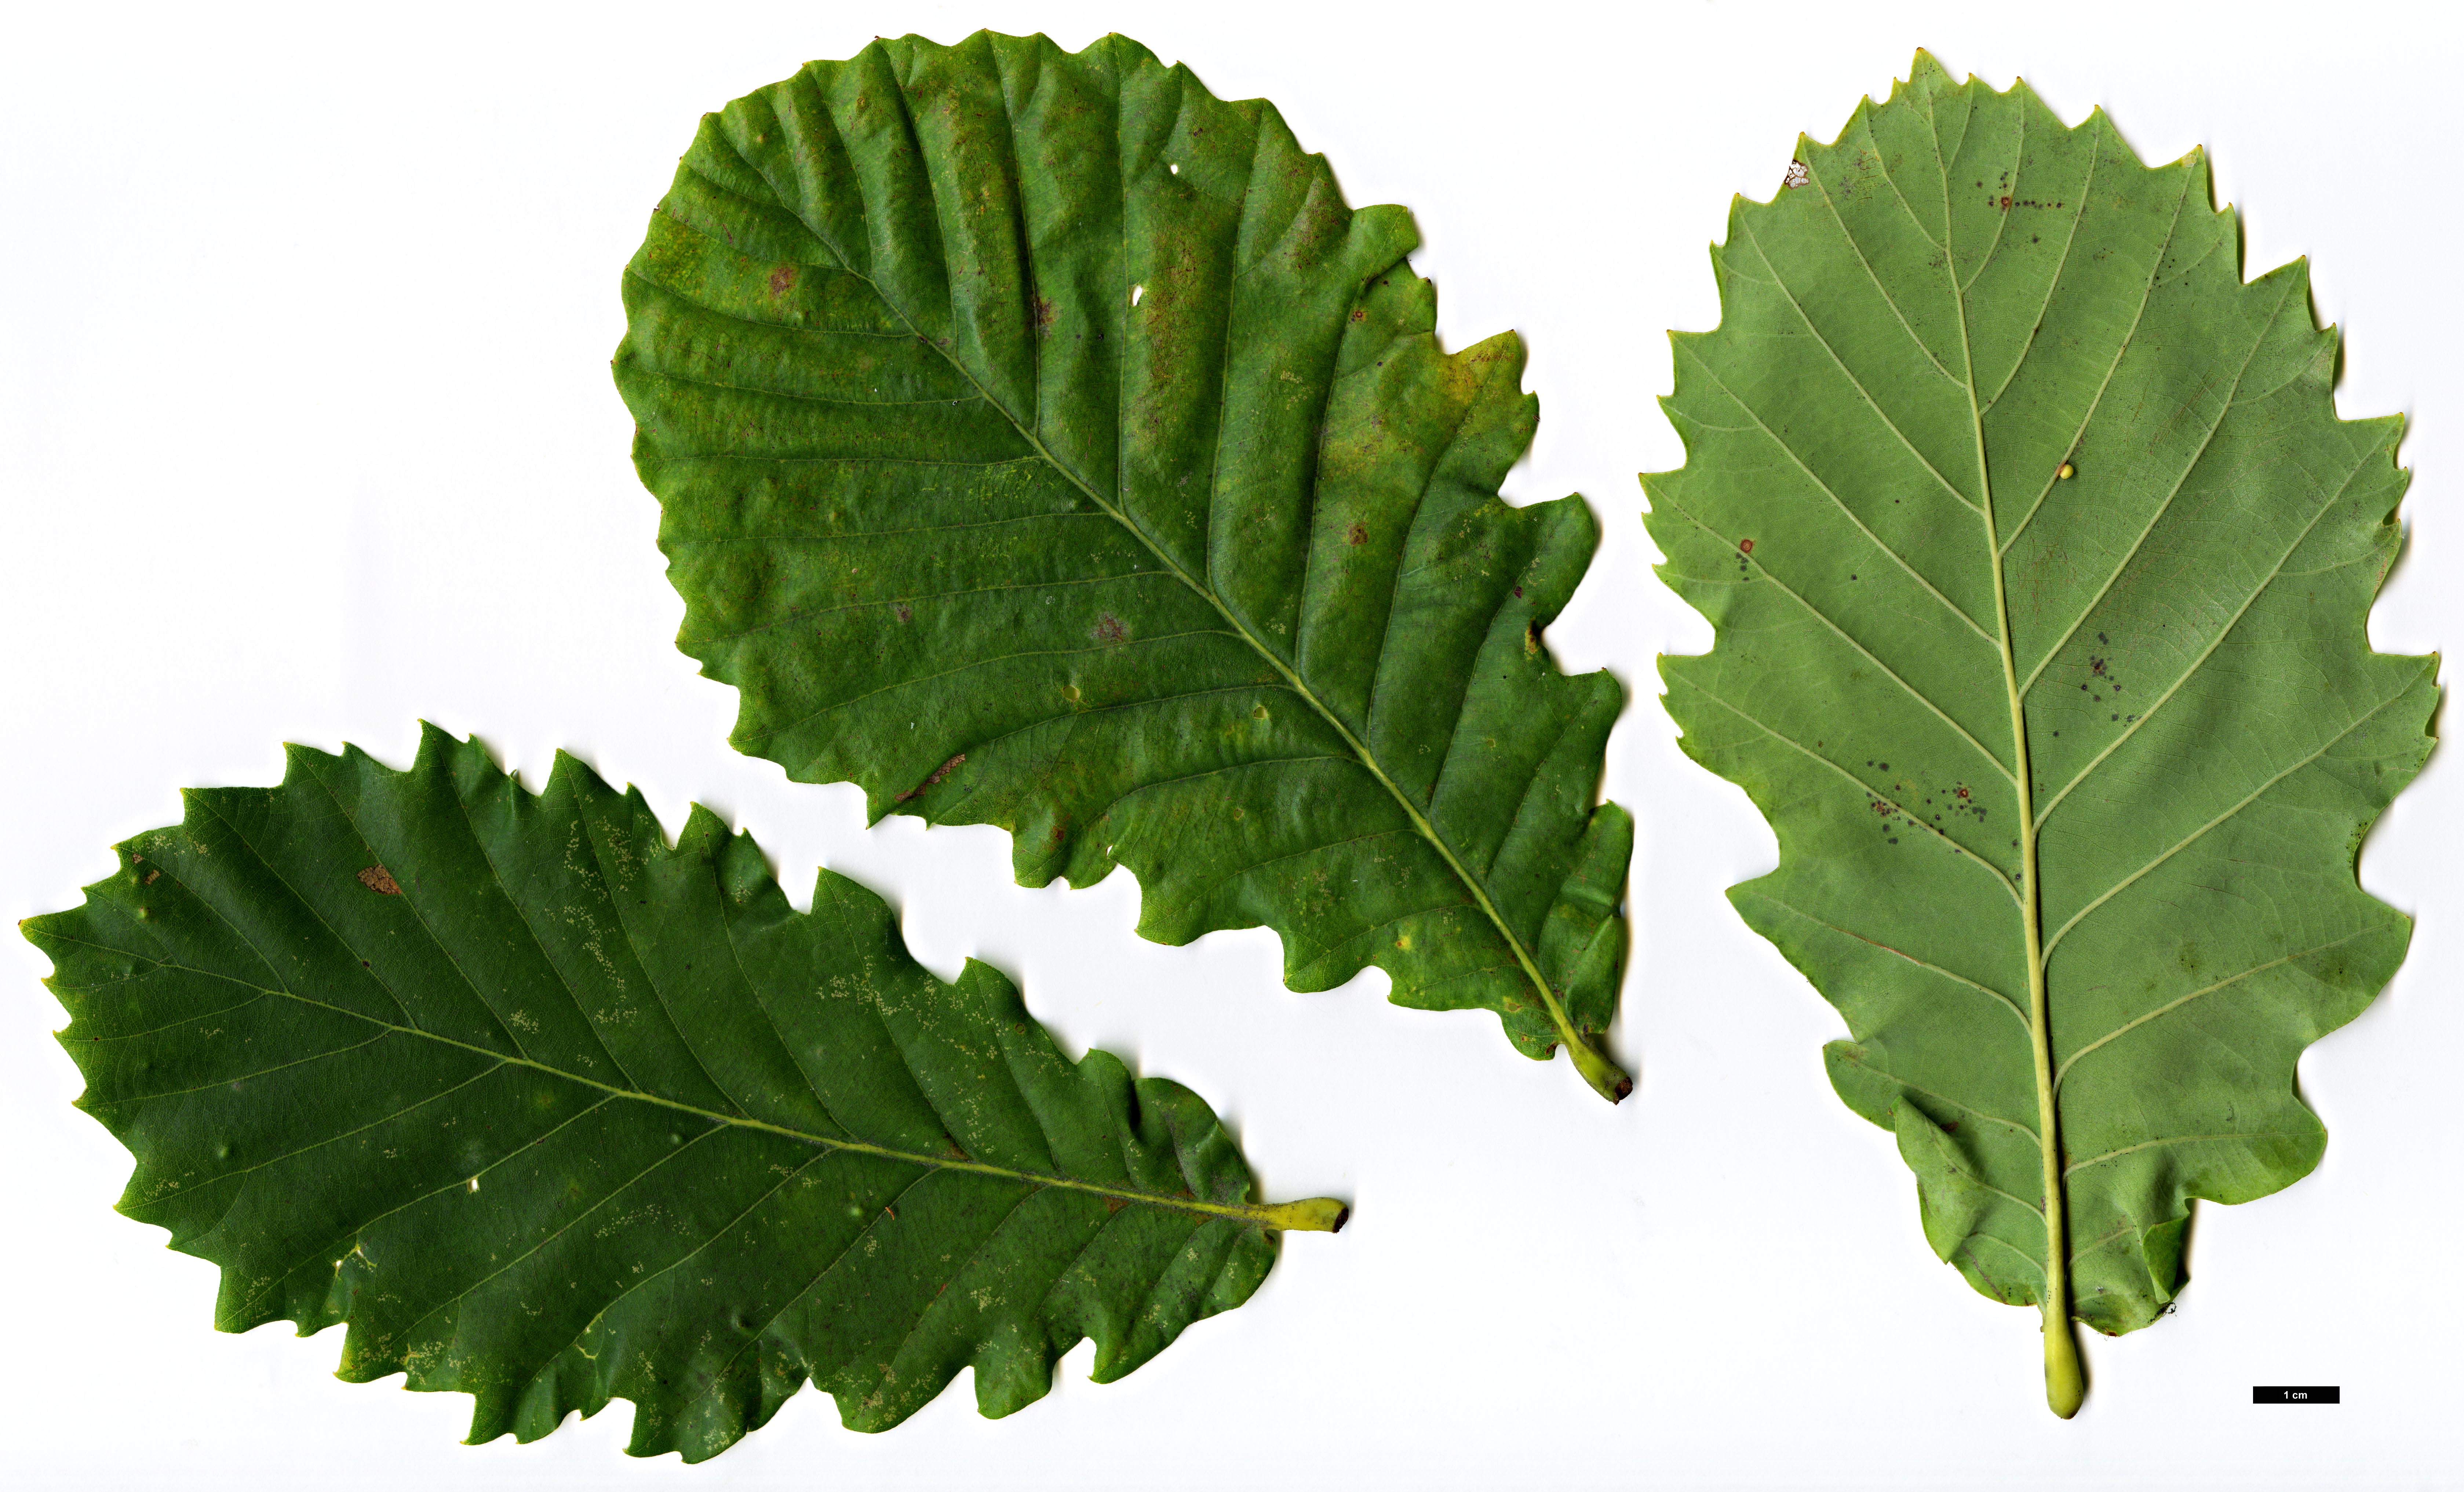 High resolution image: Family: Fagaceae - Genus: Quercus - Taxon: ×hickelii - SpeciesSub: 'Giesselhorst' (Q.pontica × Q.robur)